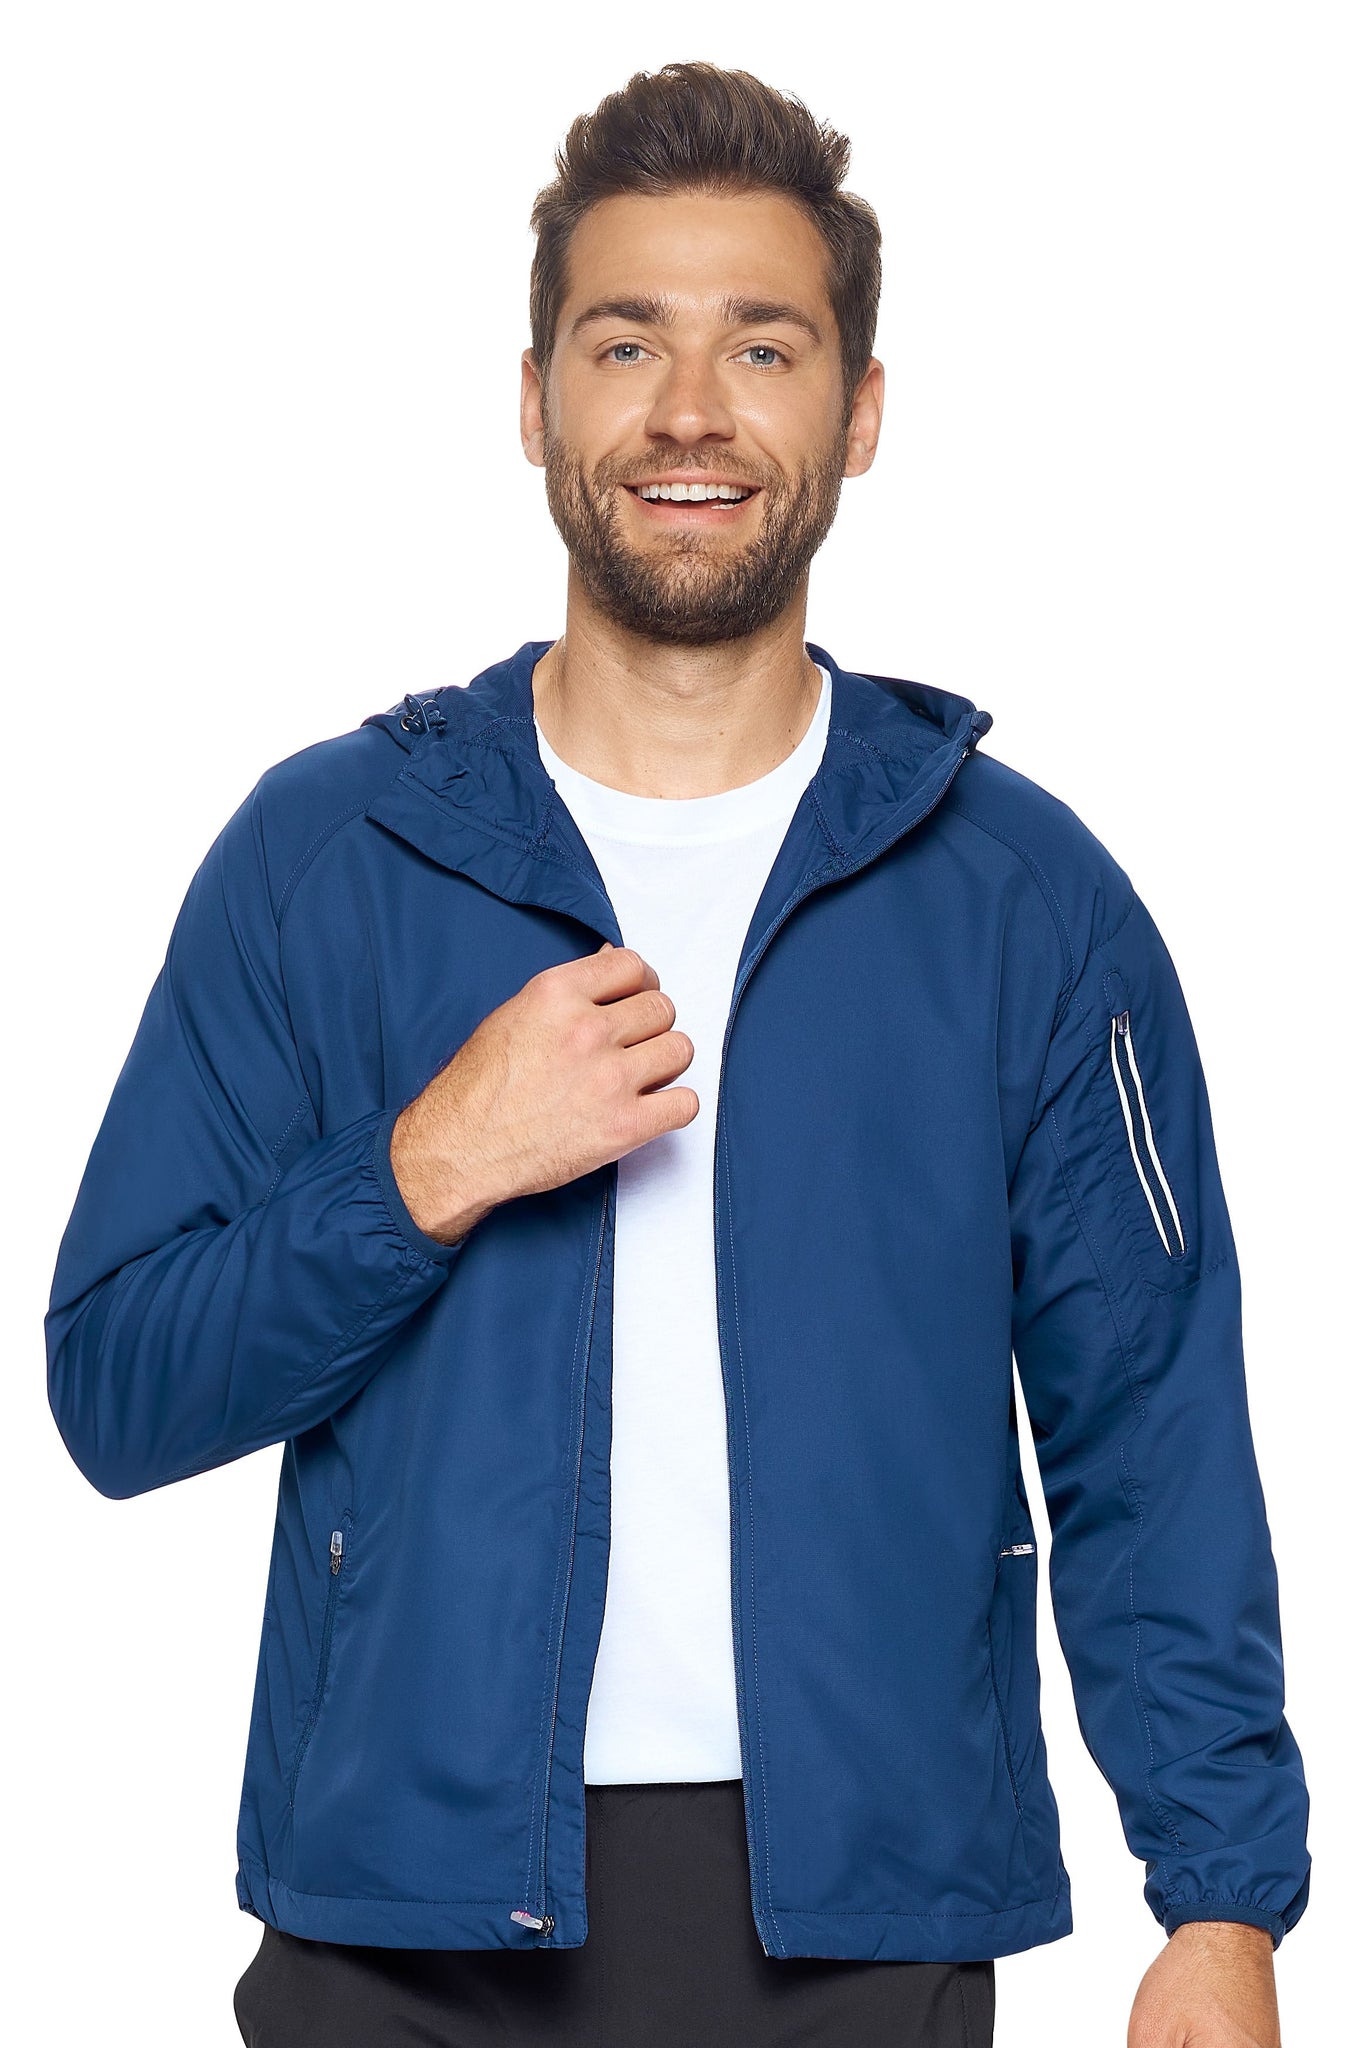 Expert Brand Wholesale Men's Water Resistant Hooded Swift Tec Jacket in navy#navy